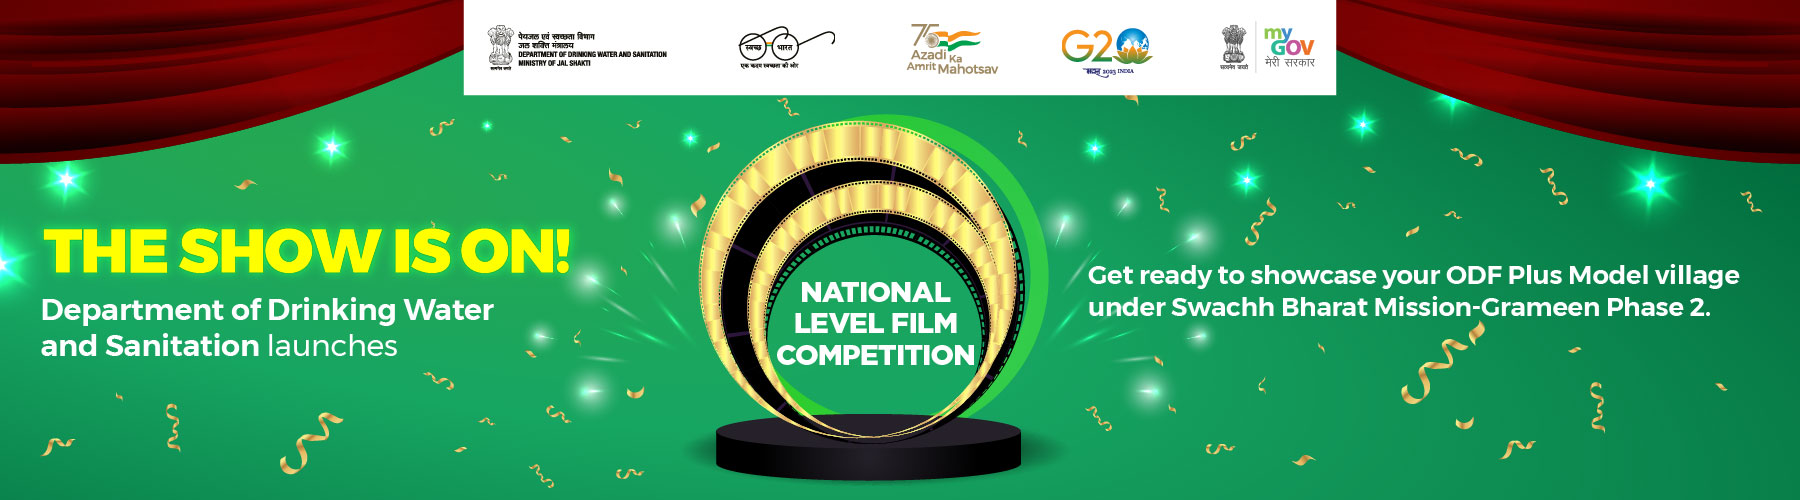 राष्ट्रीय स्तर की फिल्म प्रतियोगिता